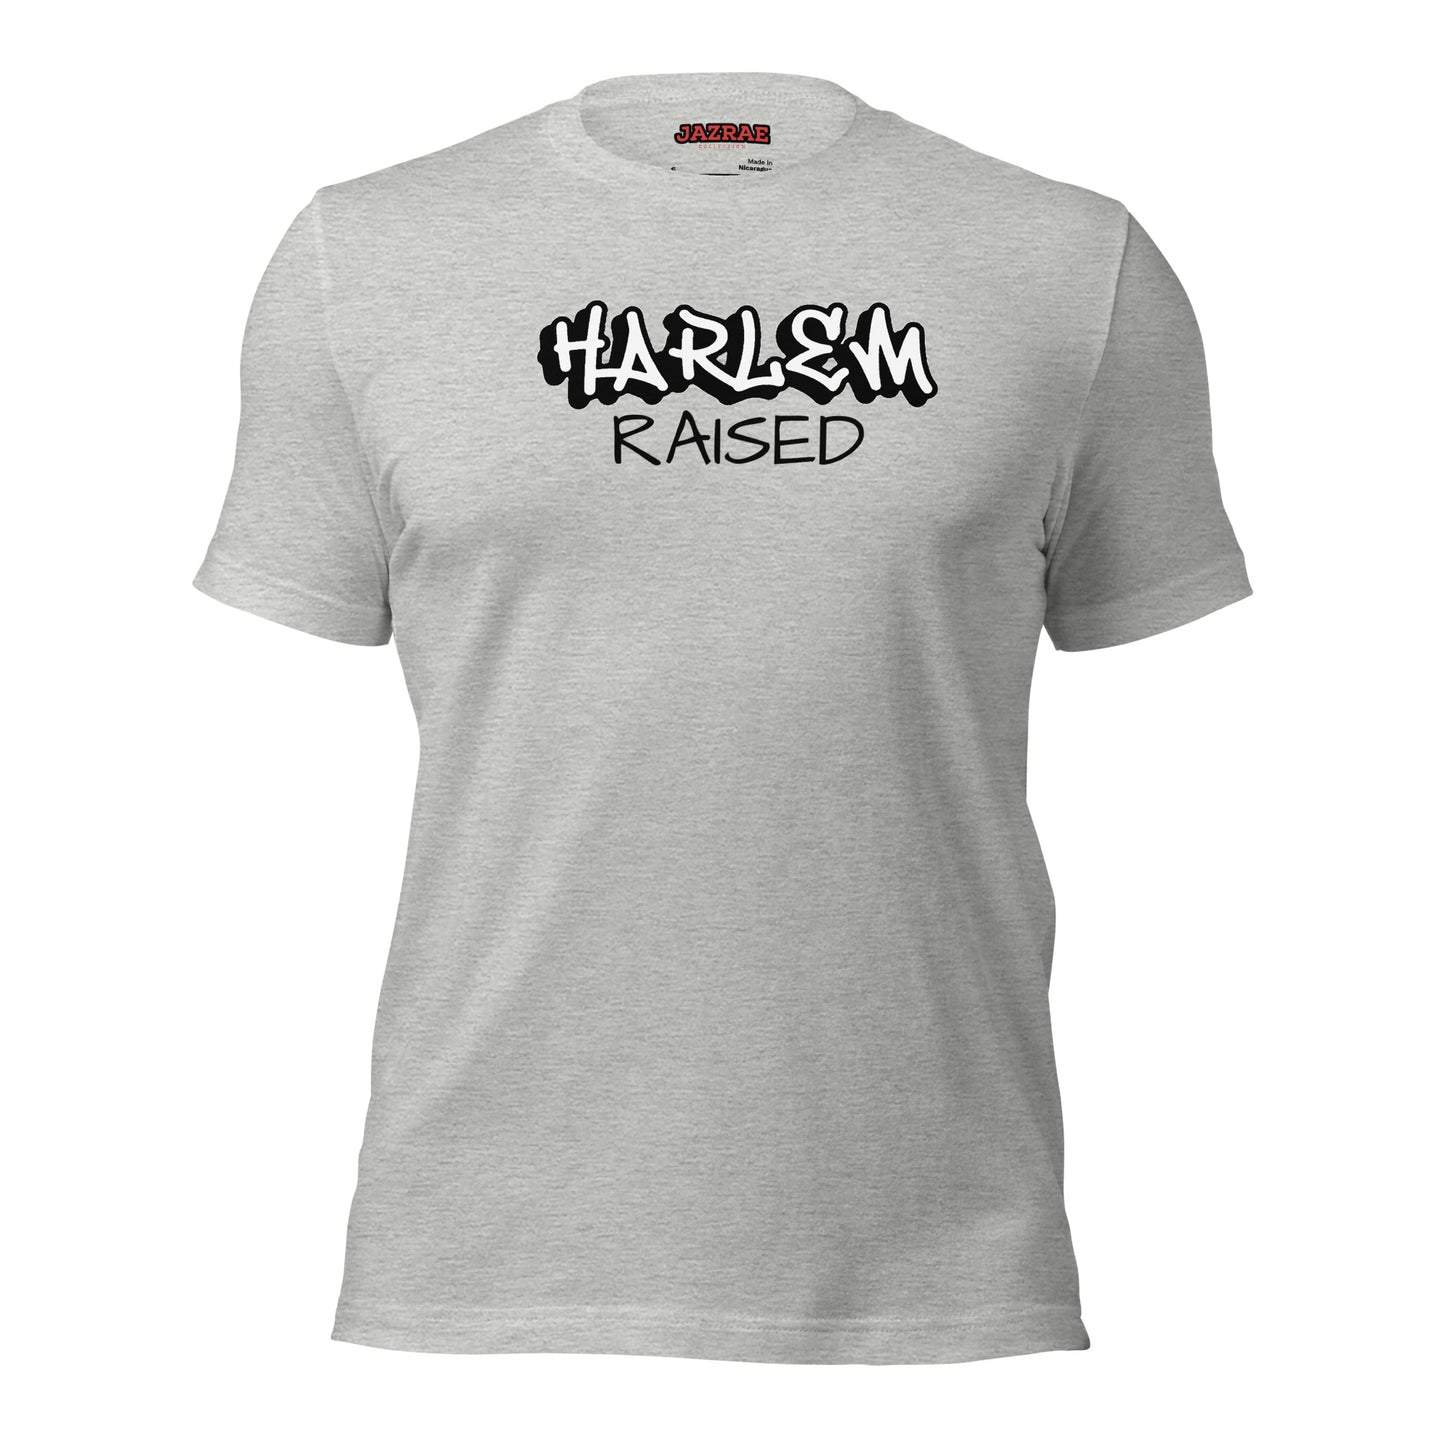 JAZRAE HARLEM raised Unisex t-shirt